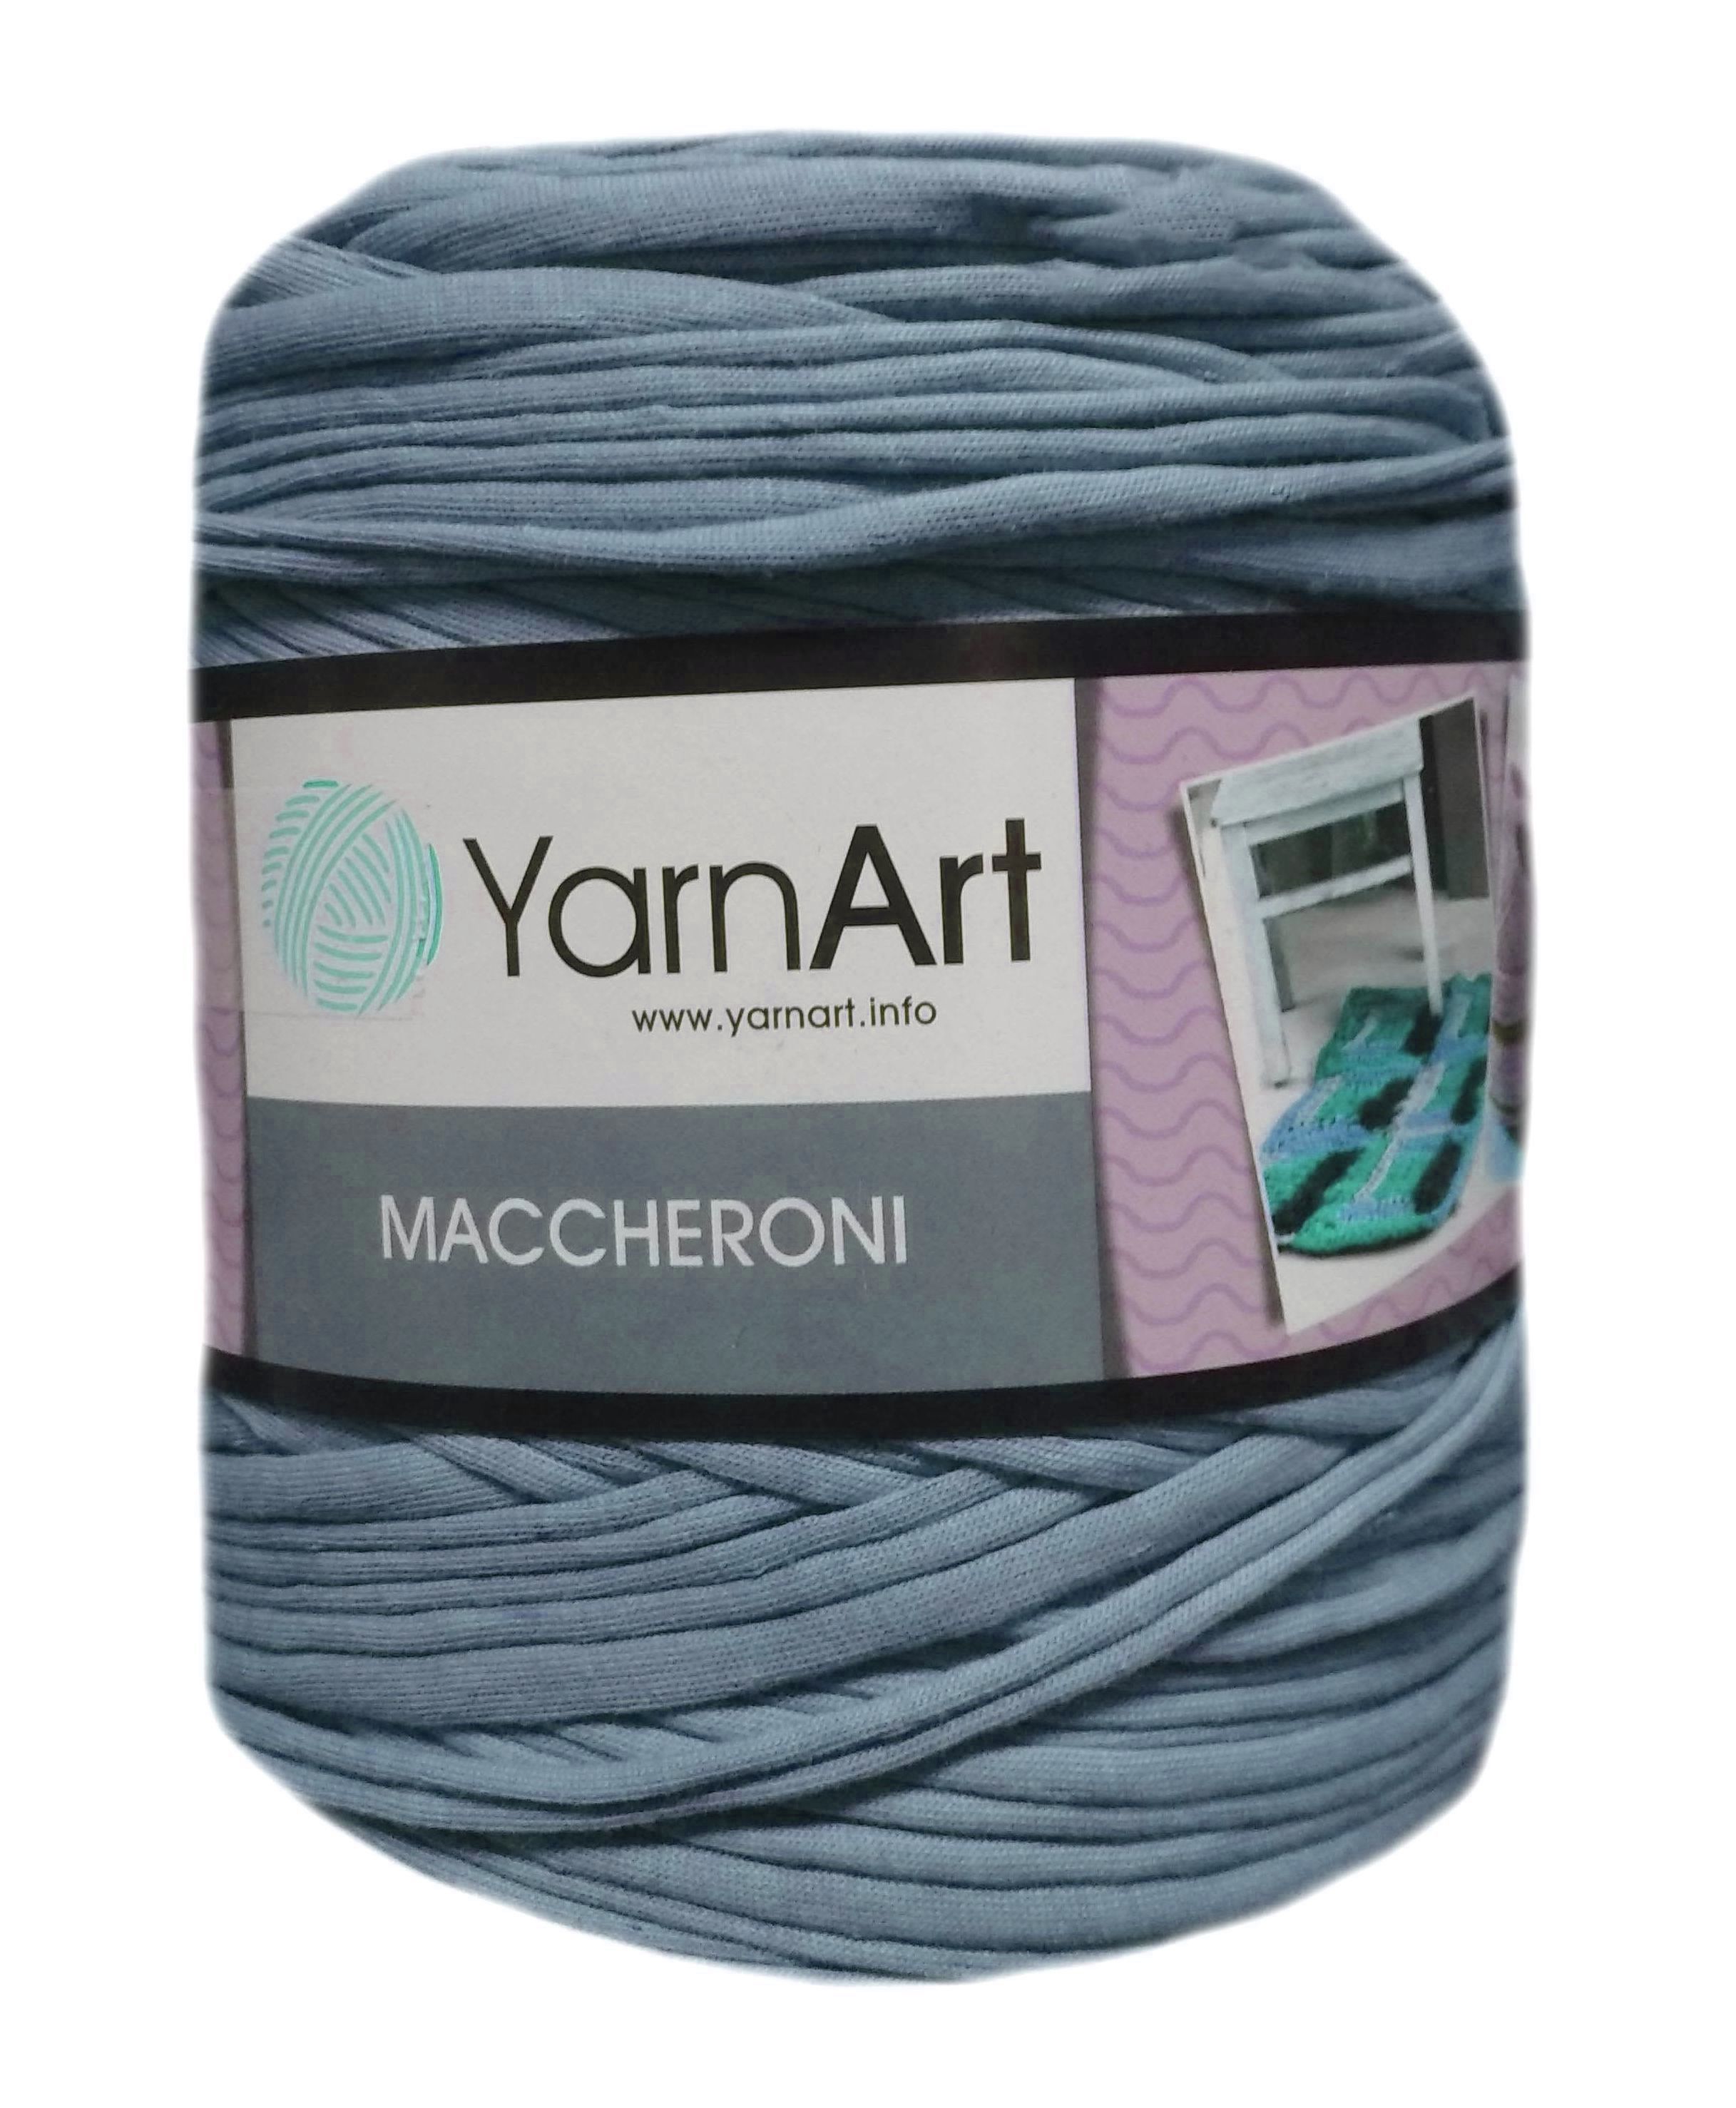 YarnArt MACCHERONI, farmerkék  póló fonal.Tű 12-15 mm.